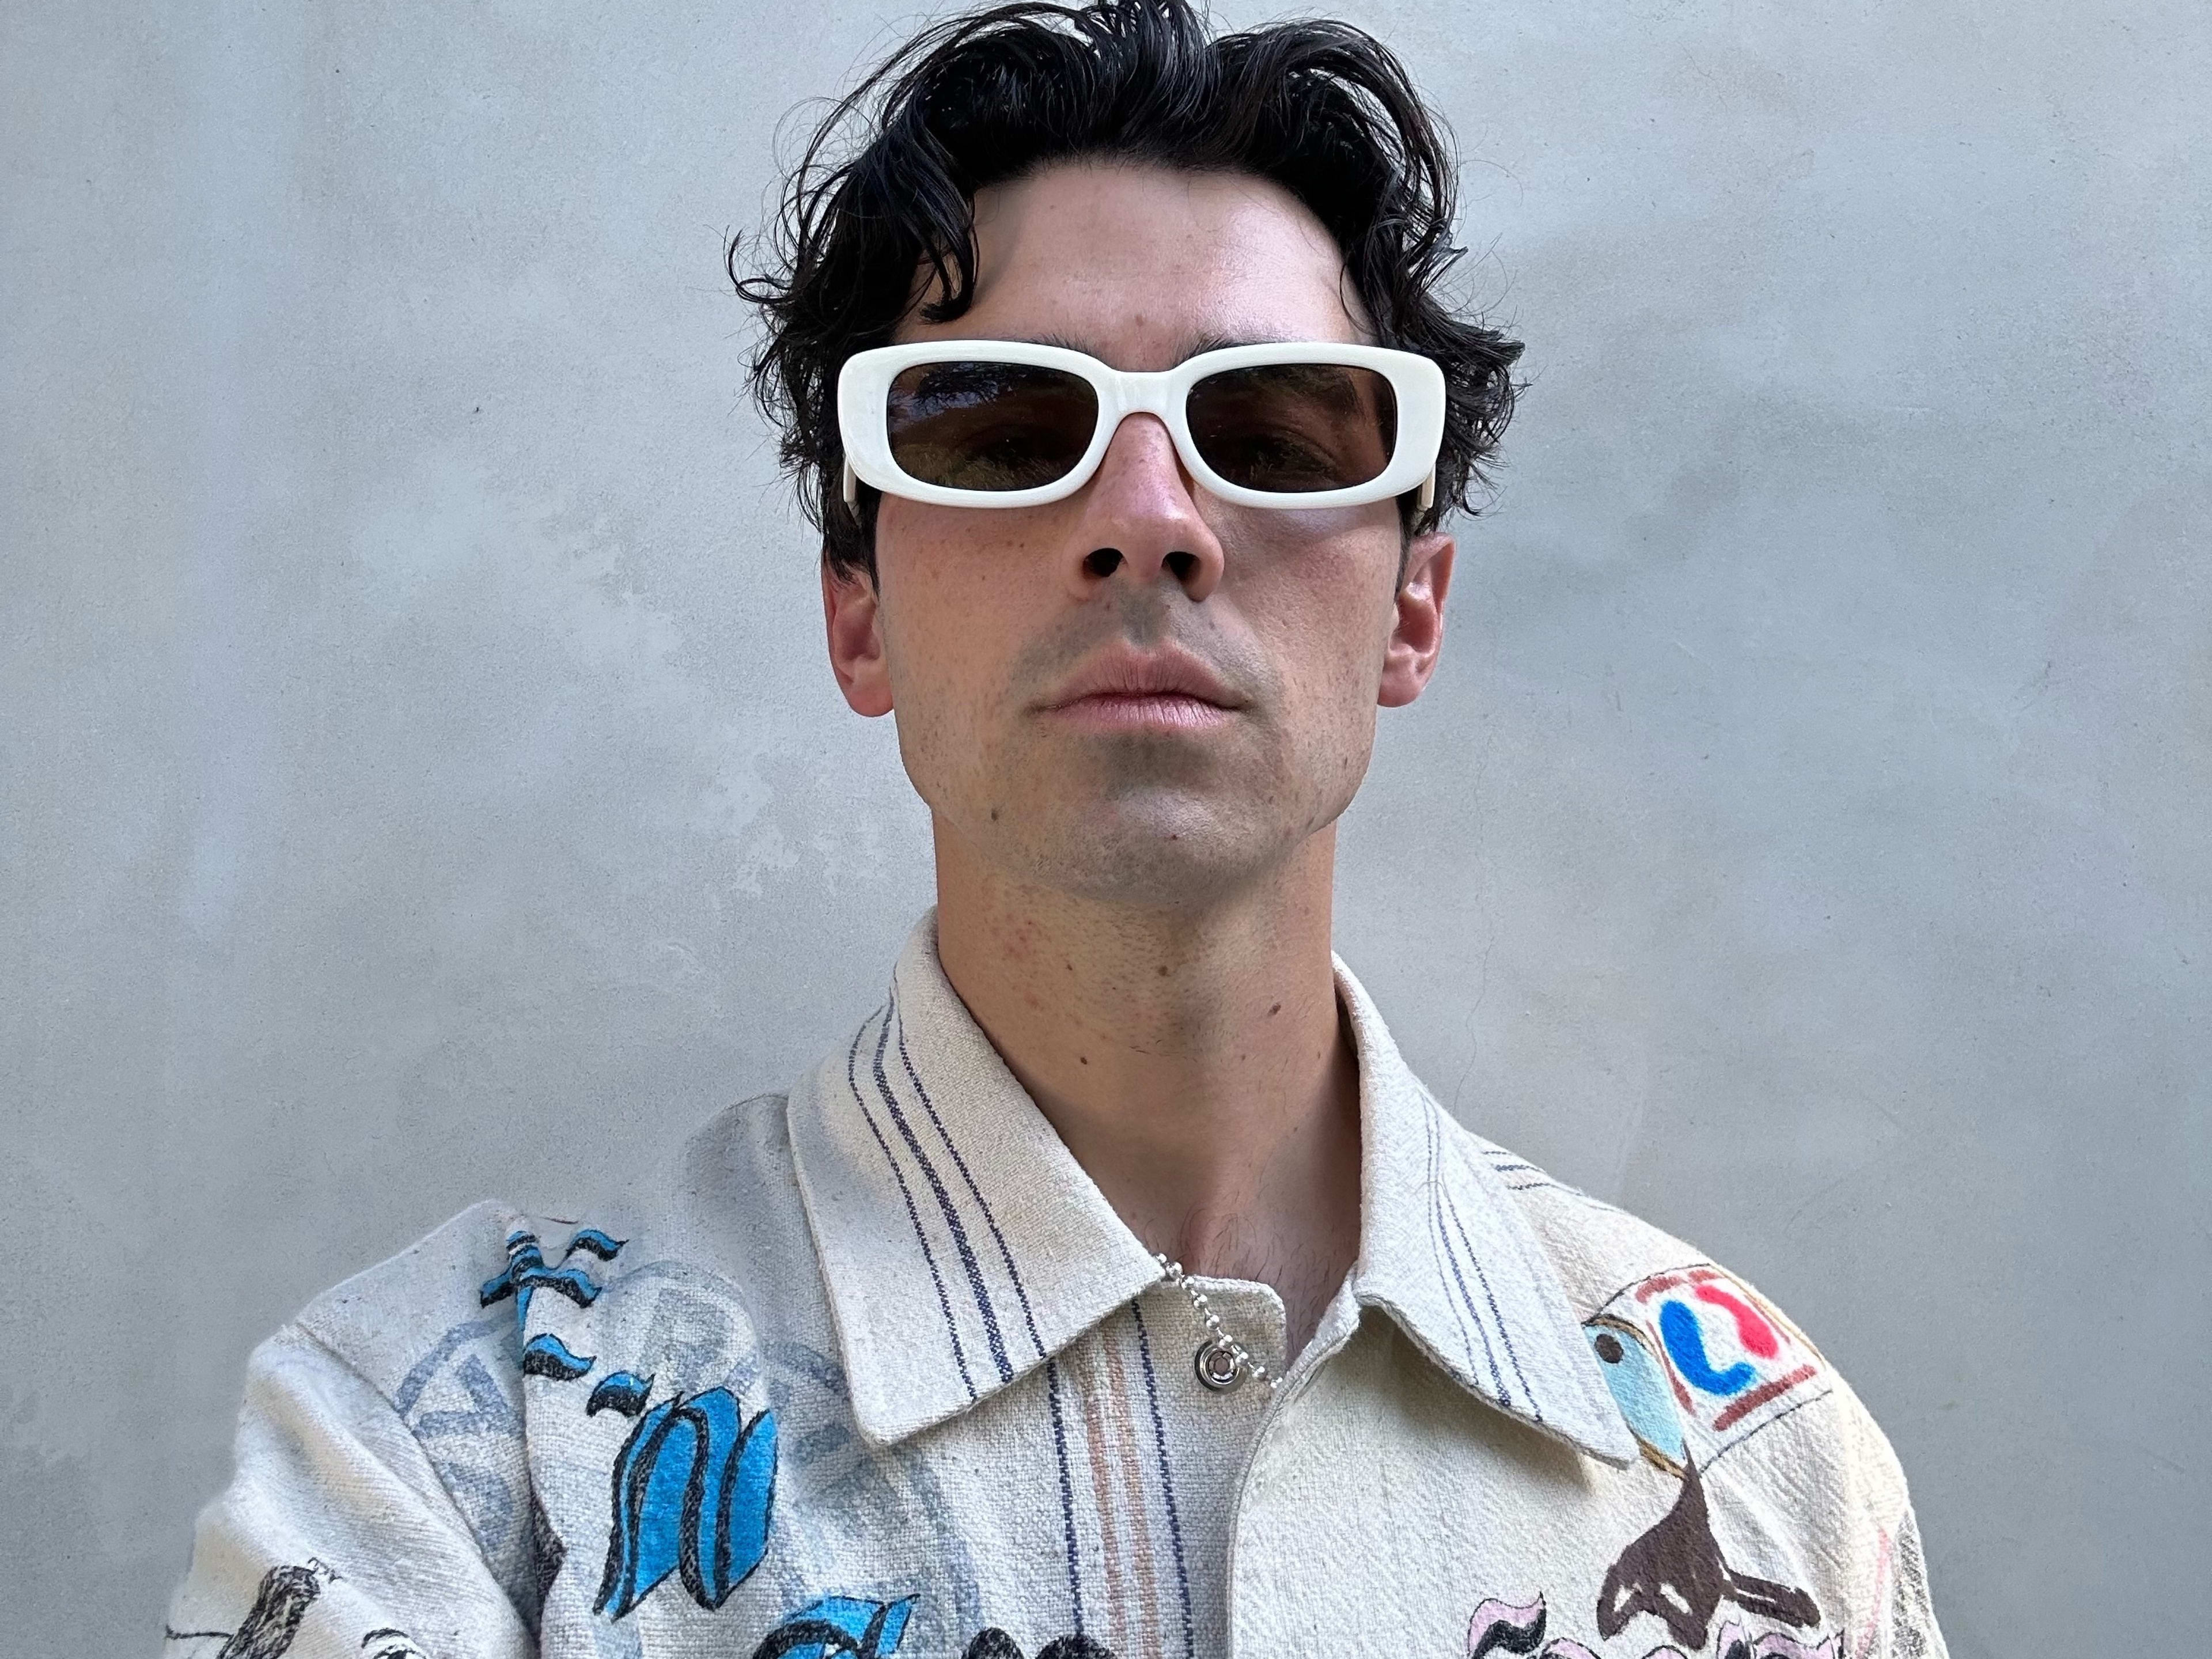 Joe Jonas wearing white sunglasses and a patterned shirt